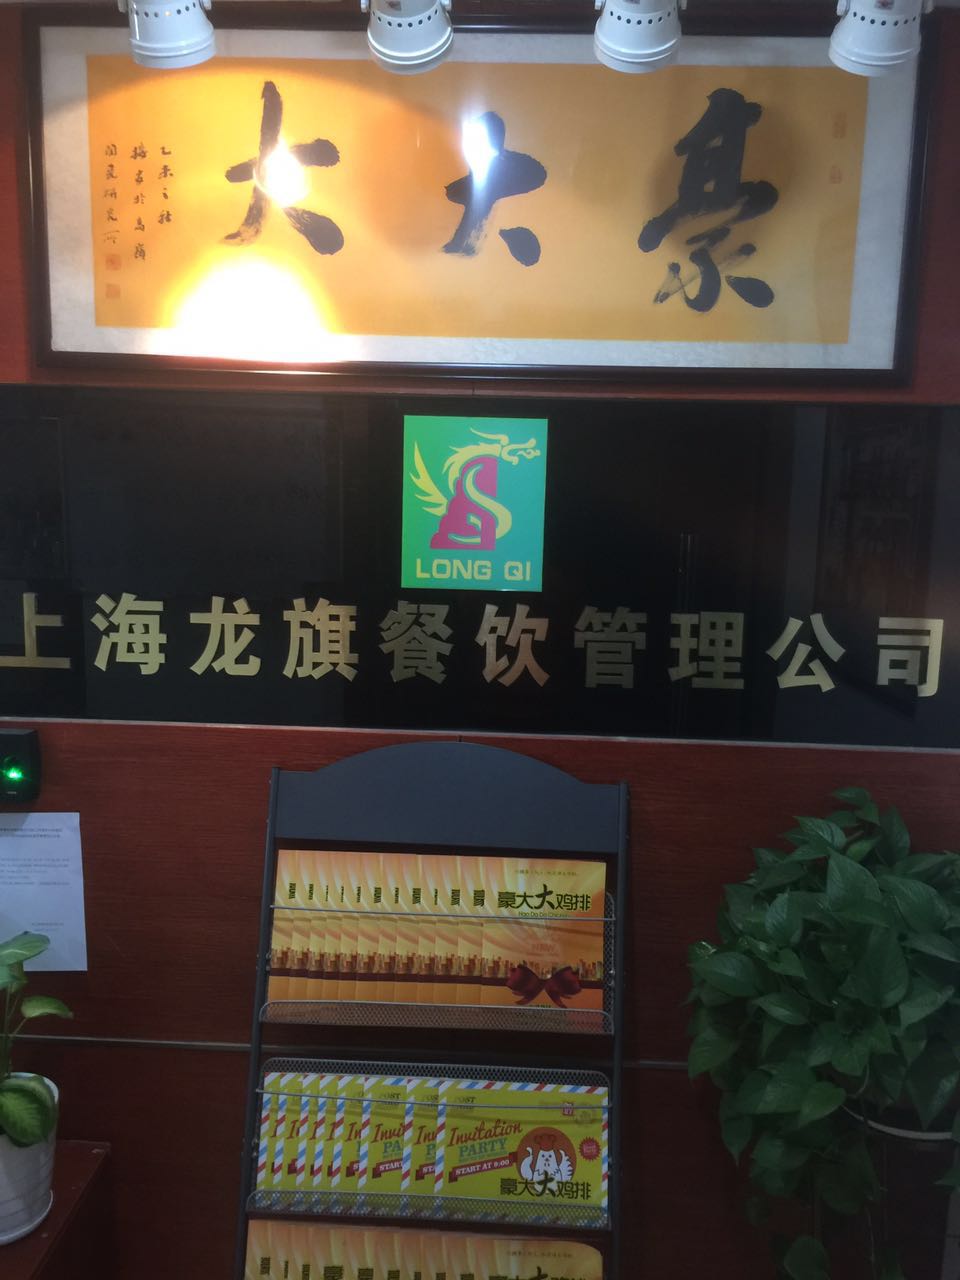 上海龙旗餐饮管理有限公司